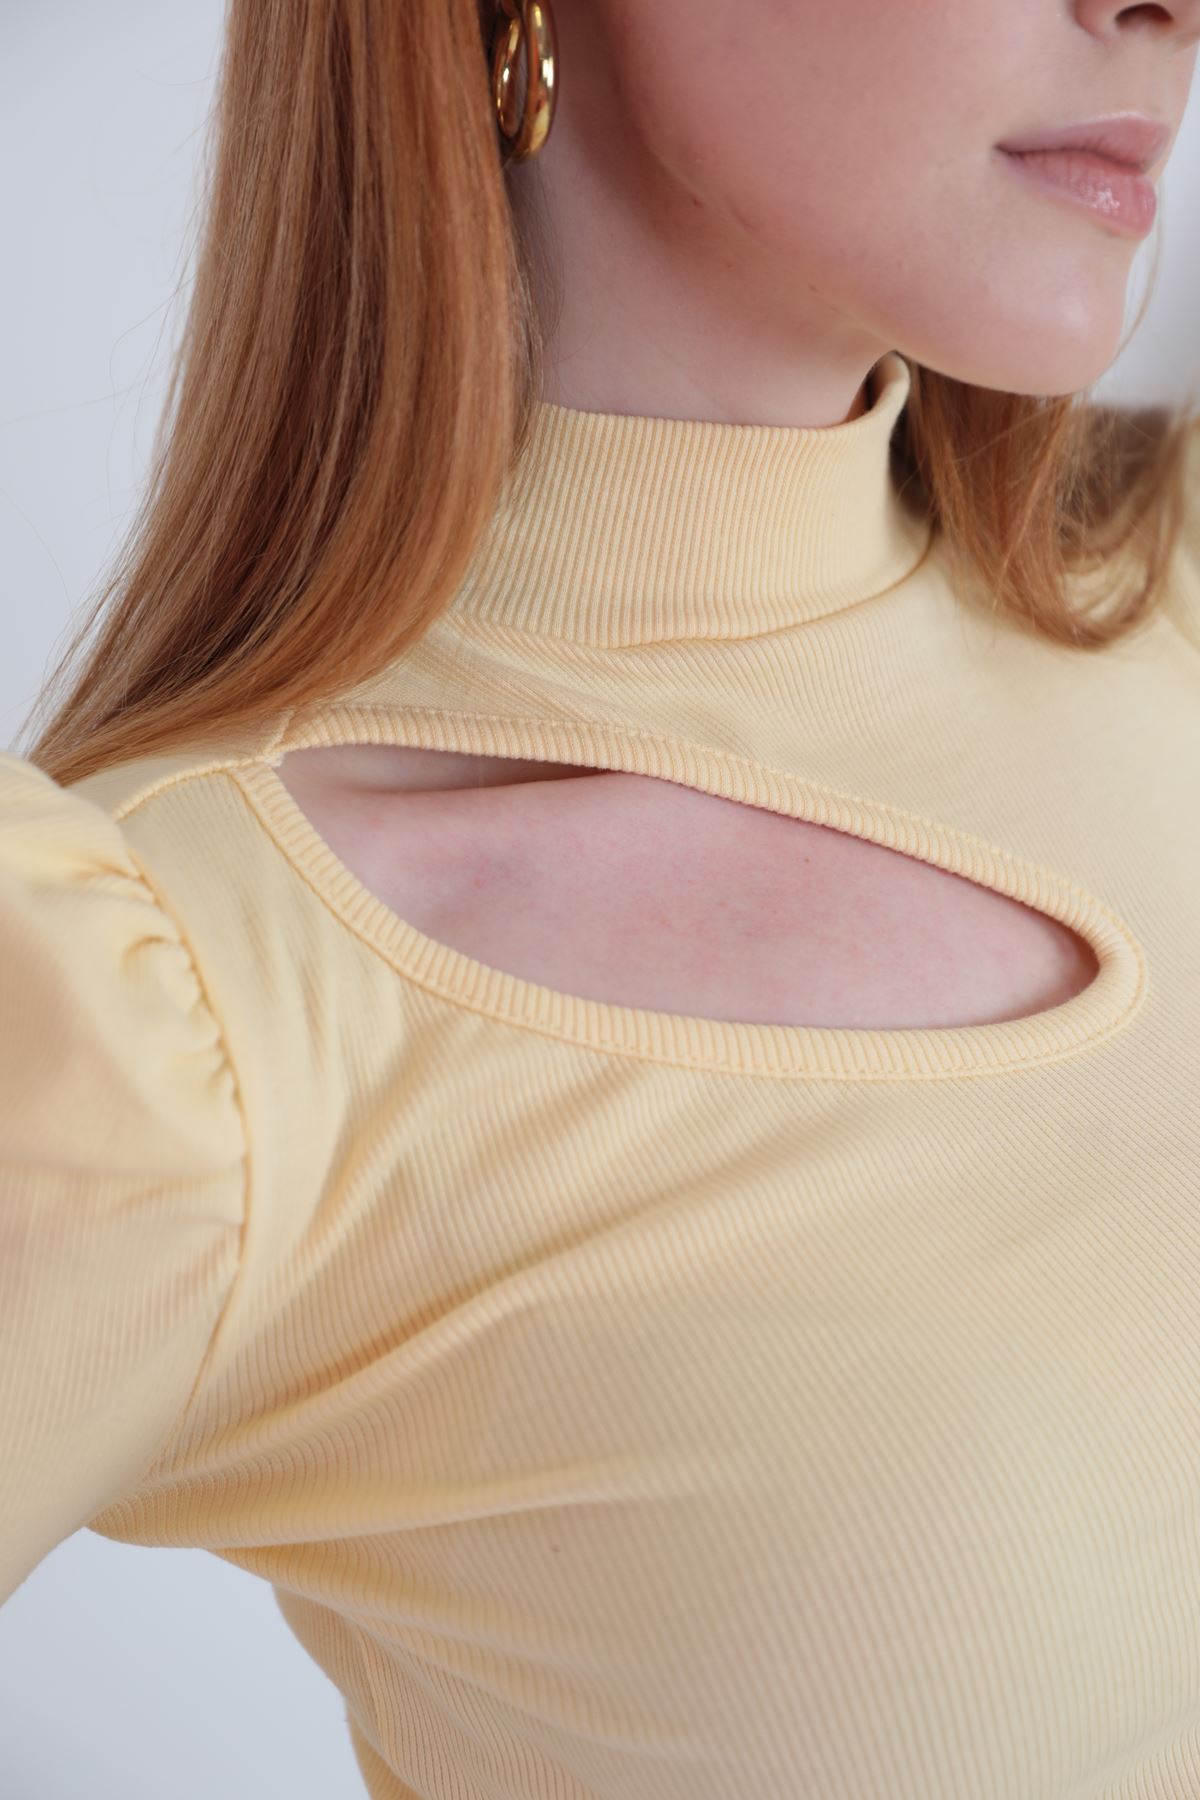 Женская блузка из ткани Camisole с окошком на рукаве арбуза-Желтый